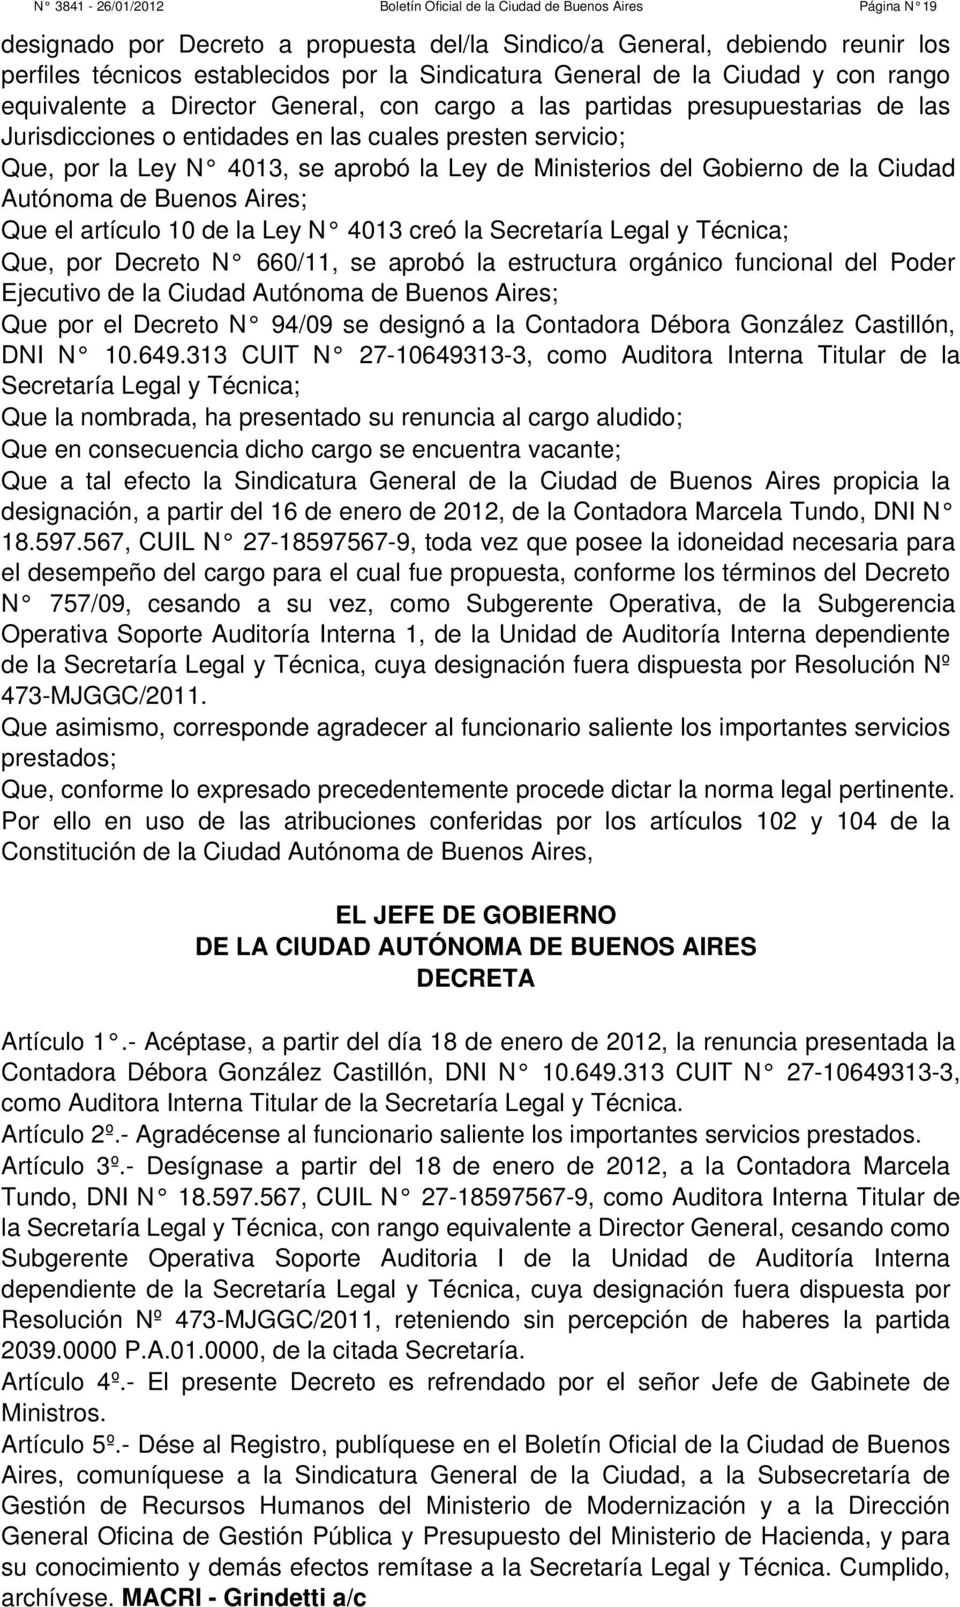 N 4013, se aprobó la Ley de Ministerios del Gobierno de la Ciudad Autónoma de Buenos Aires; Que el artículo 10 de la Ley N 4013 creó la Secretaría Legal y Técnica; Que, por Decreto N 660/11, se